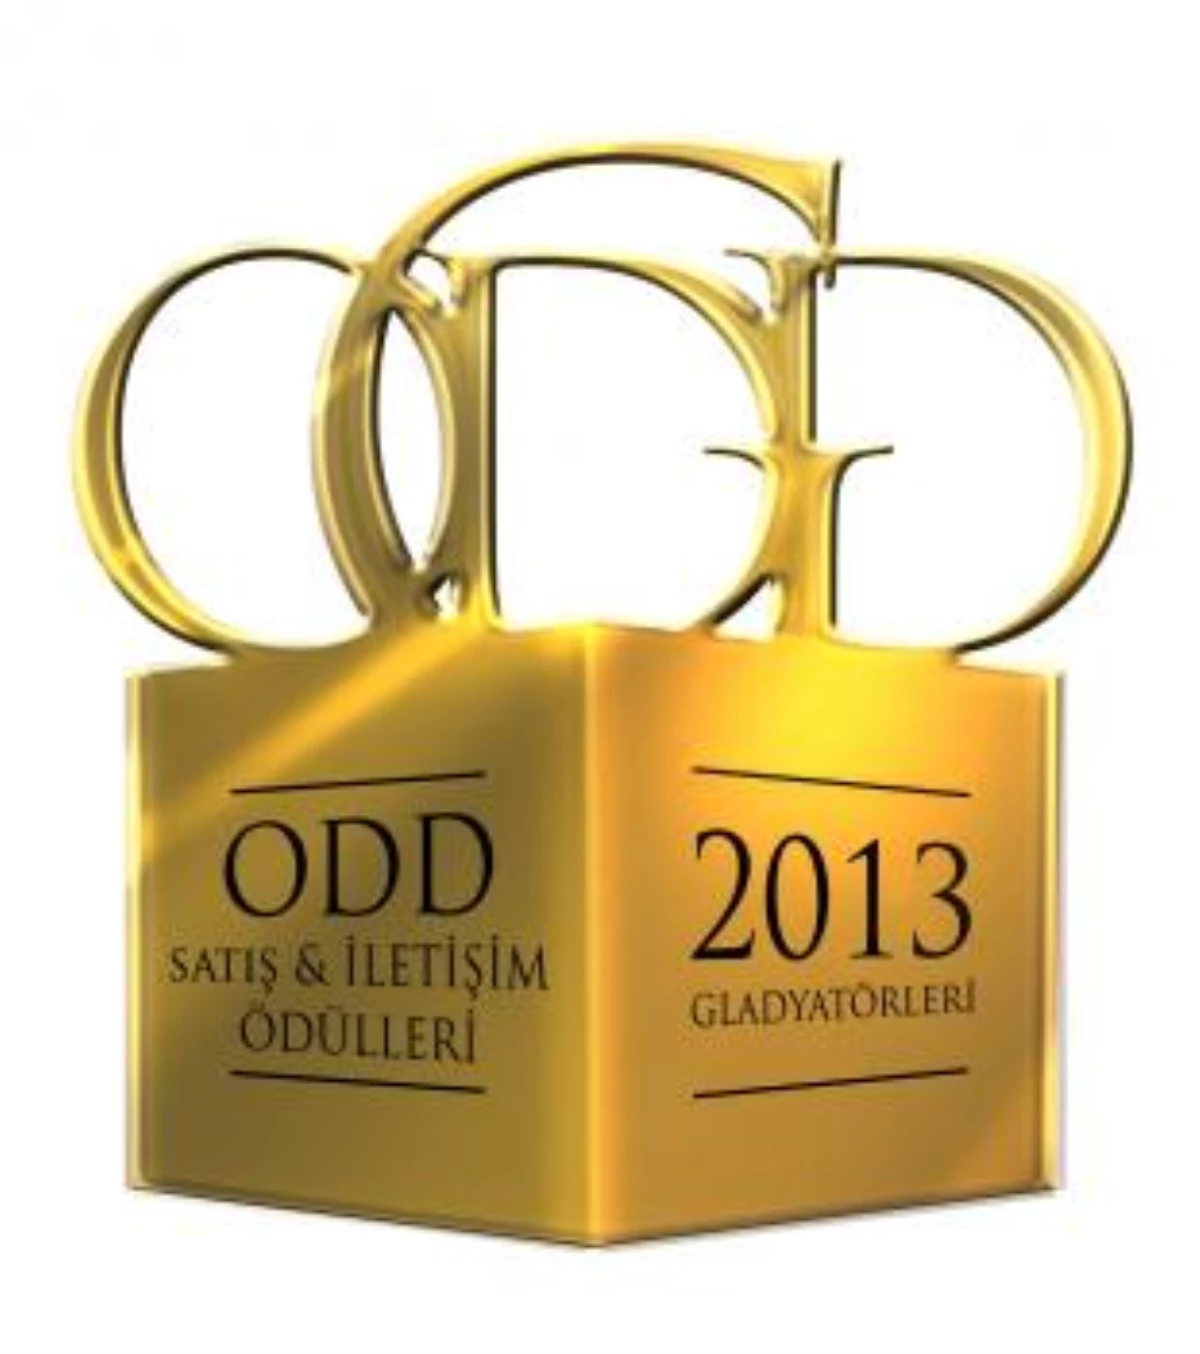 ODD Satış ve İletişim Ödülleri, 2013 Gladyatörleri Açıklandı